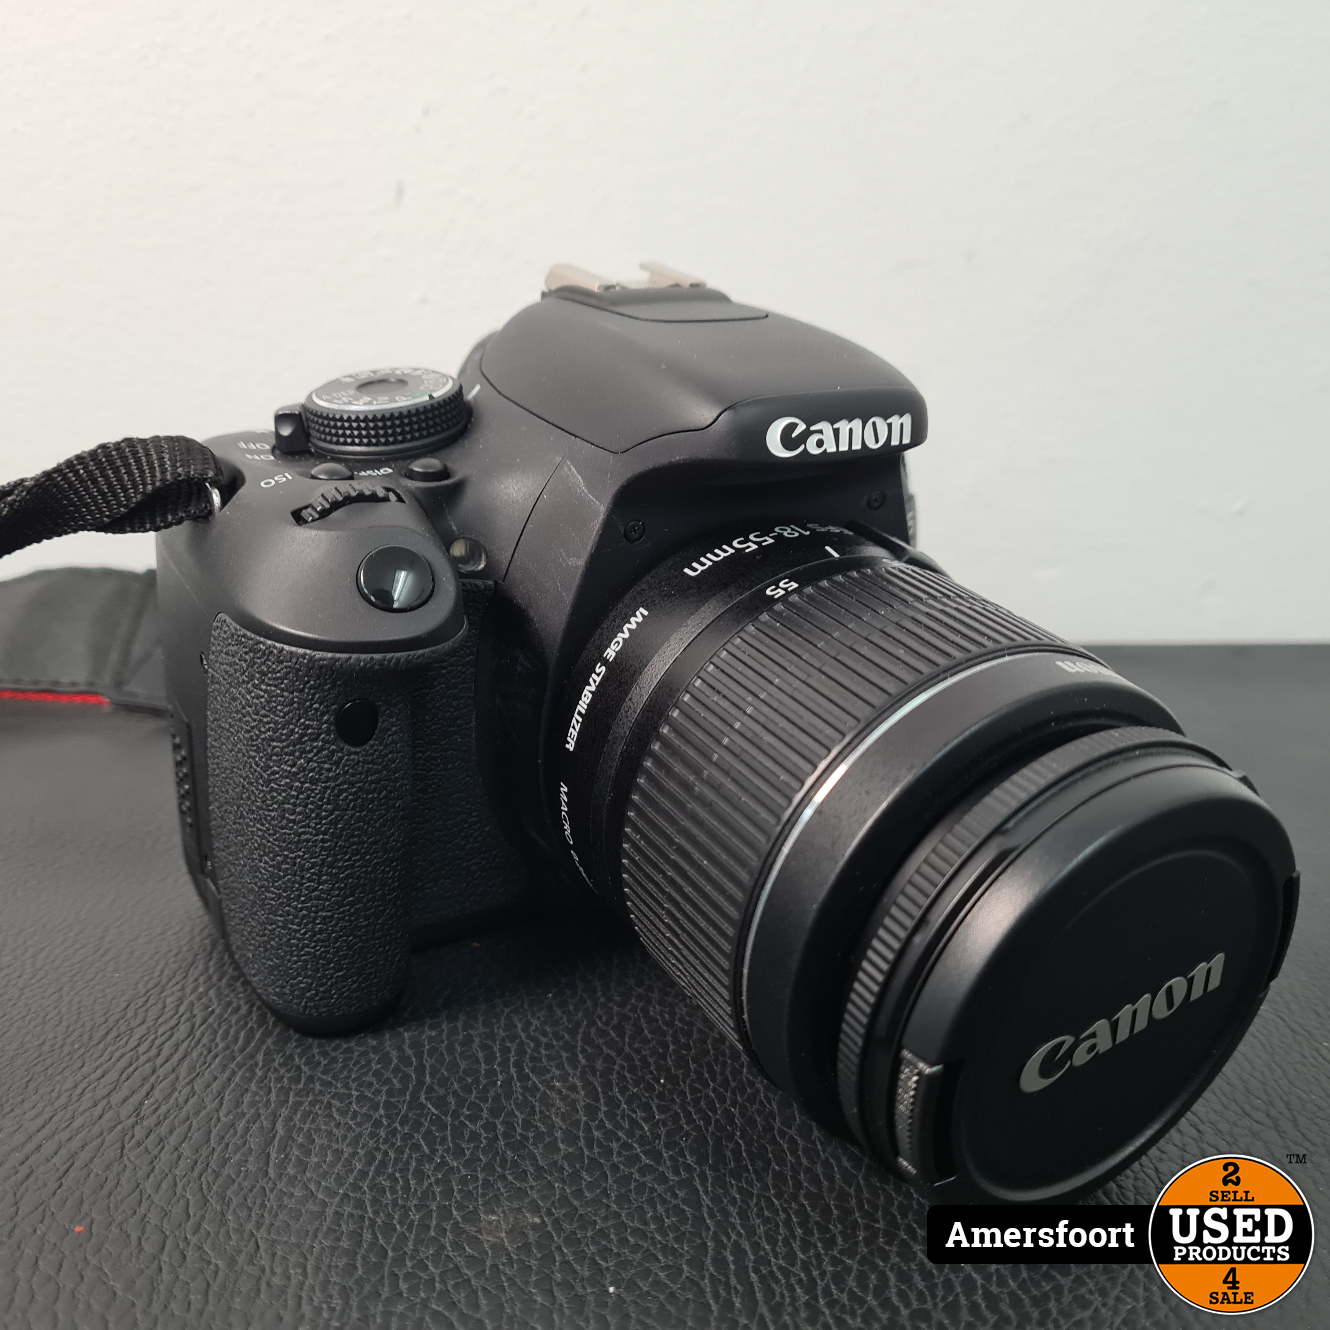 Geef rechten verzoek overloop Canon EOS 600D | 18-55mm IS II Kitlens - Used Products Amersfoort